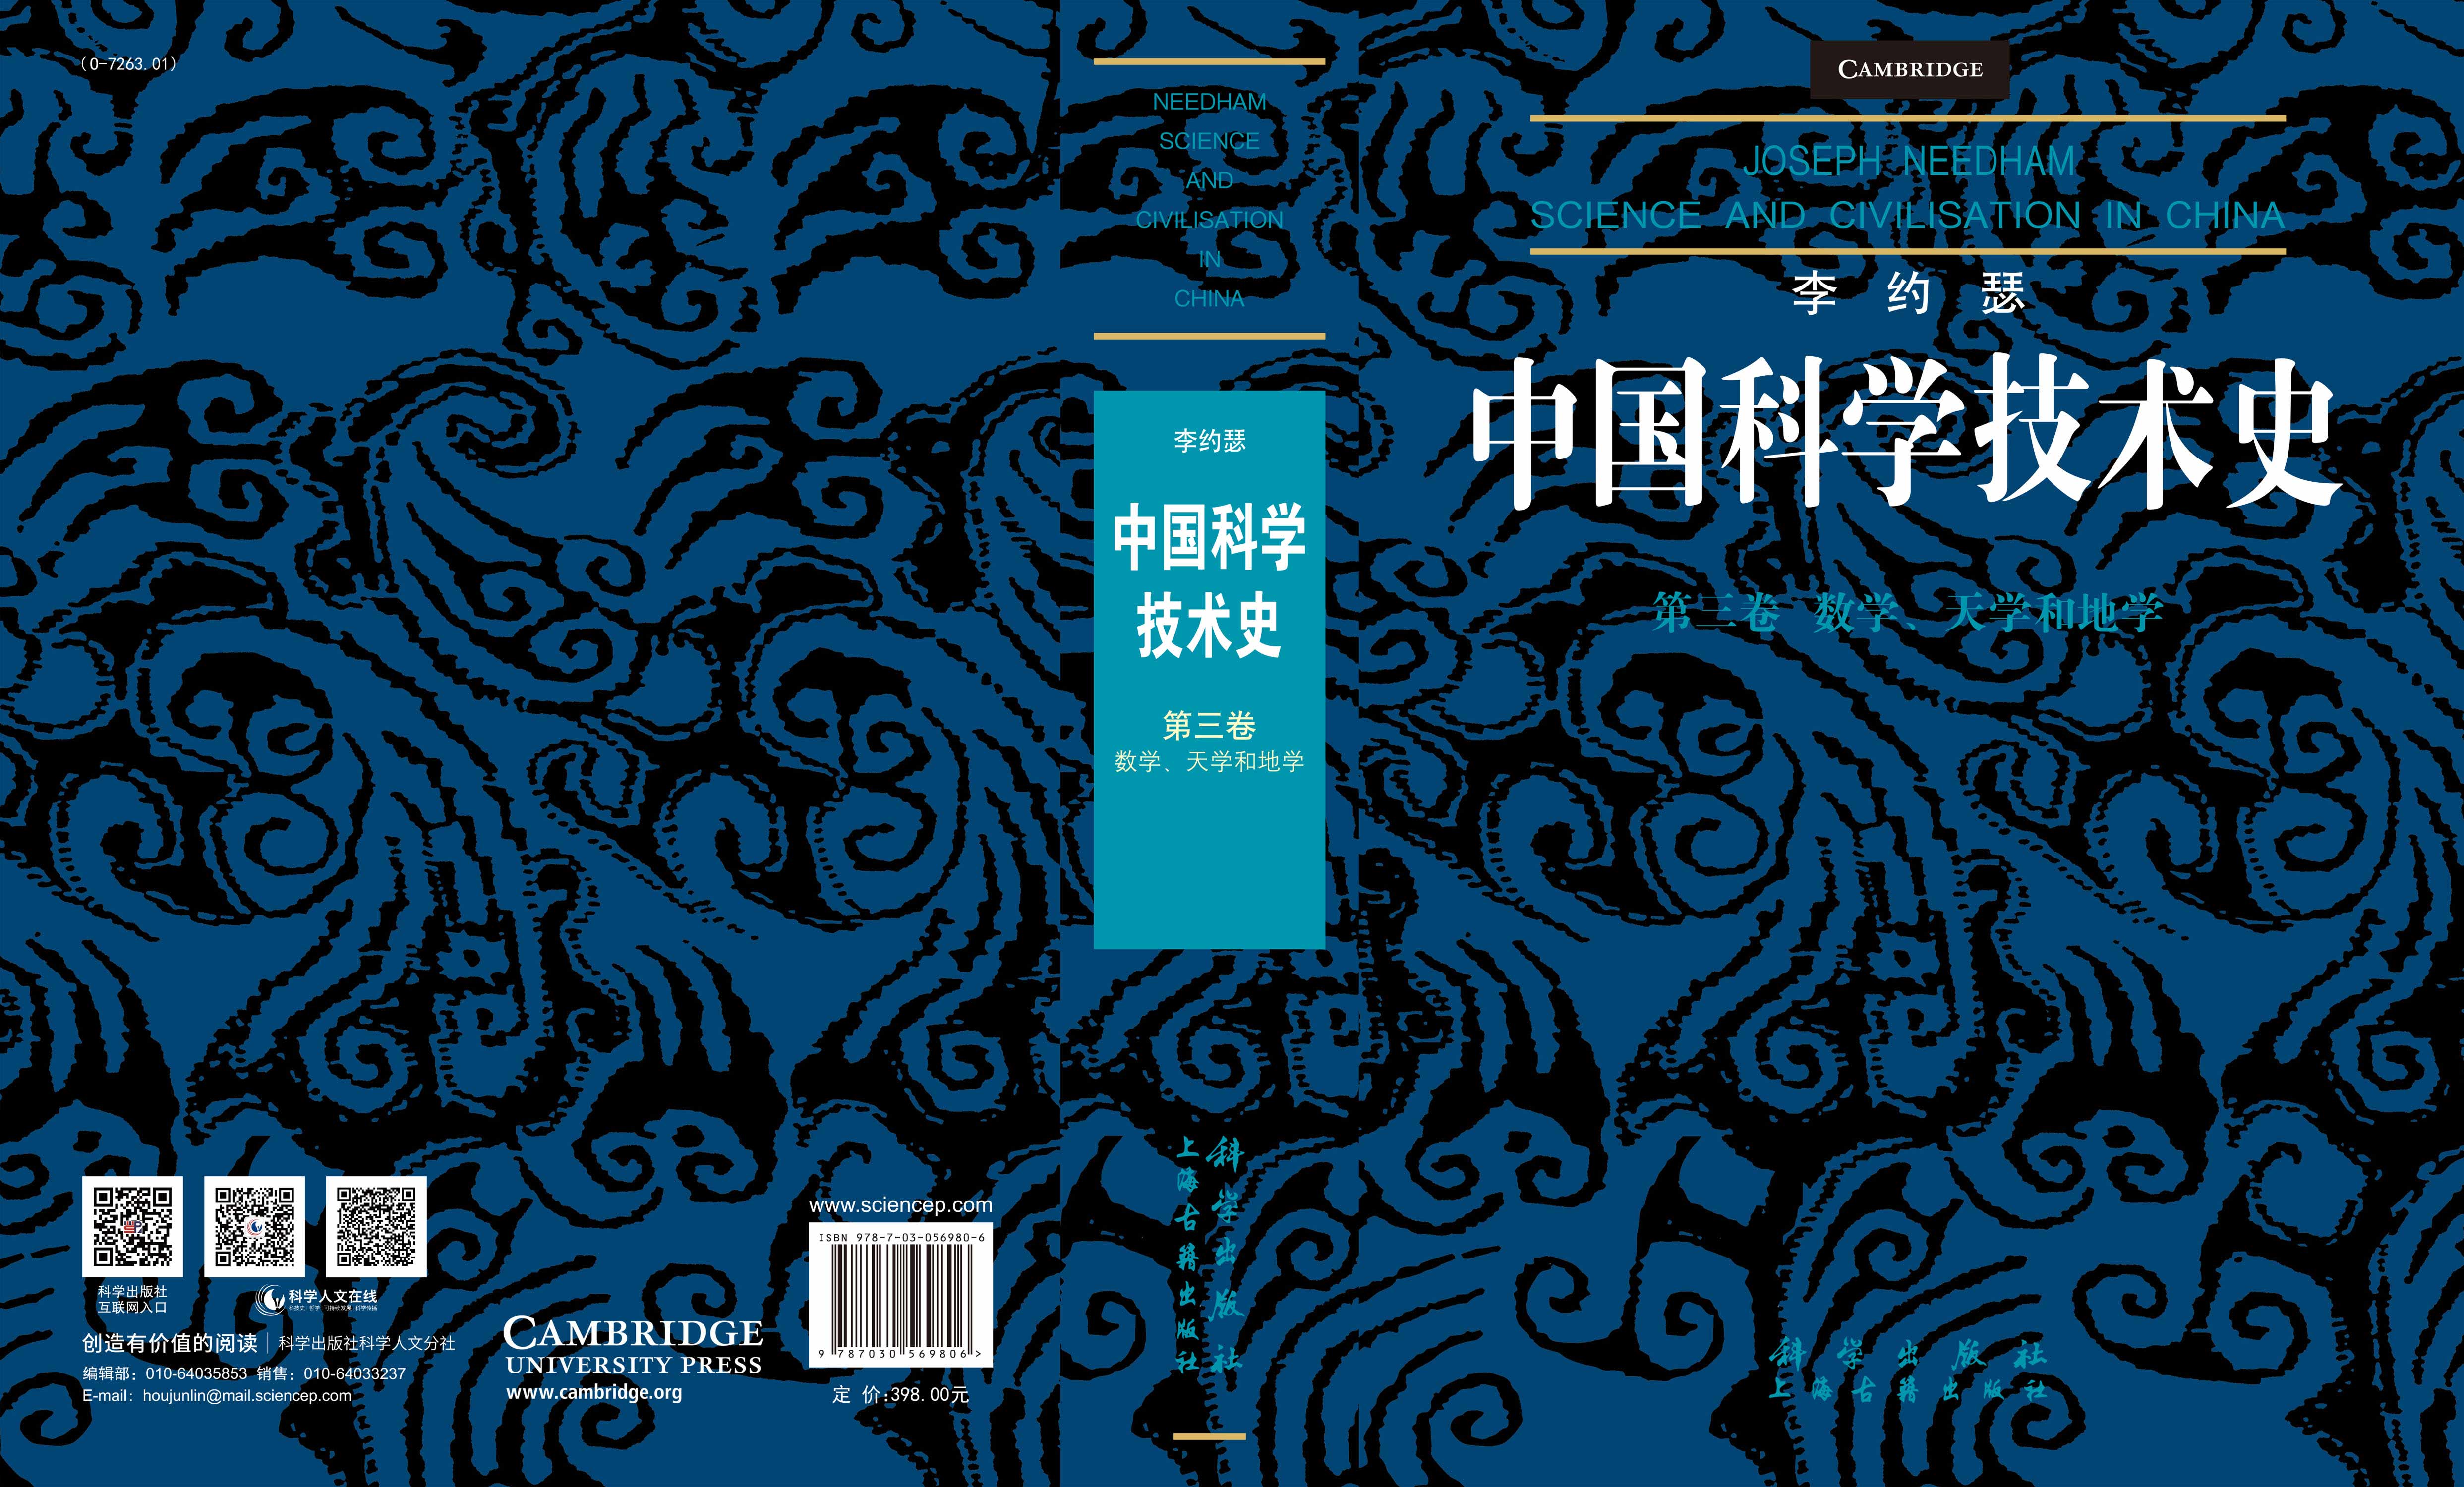 李约瑟中国科学技术史第三卷：数学、天学和地学